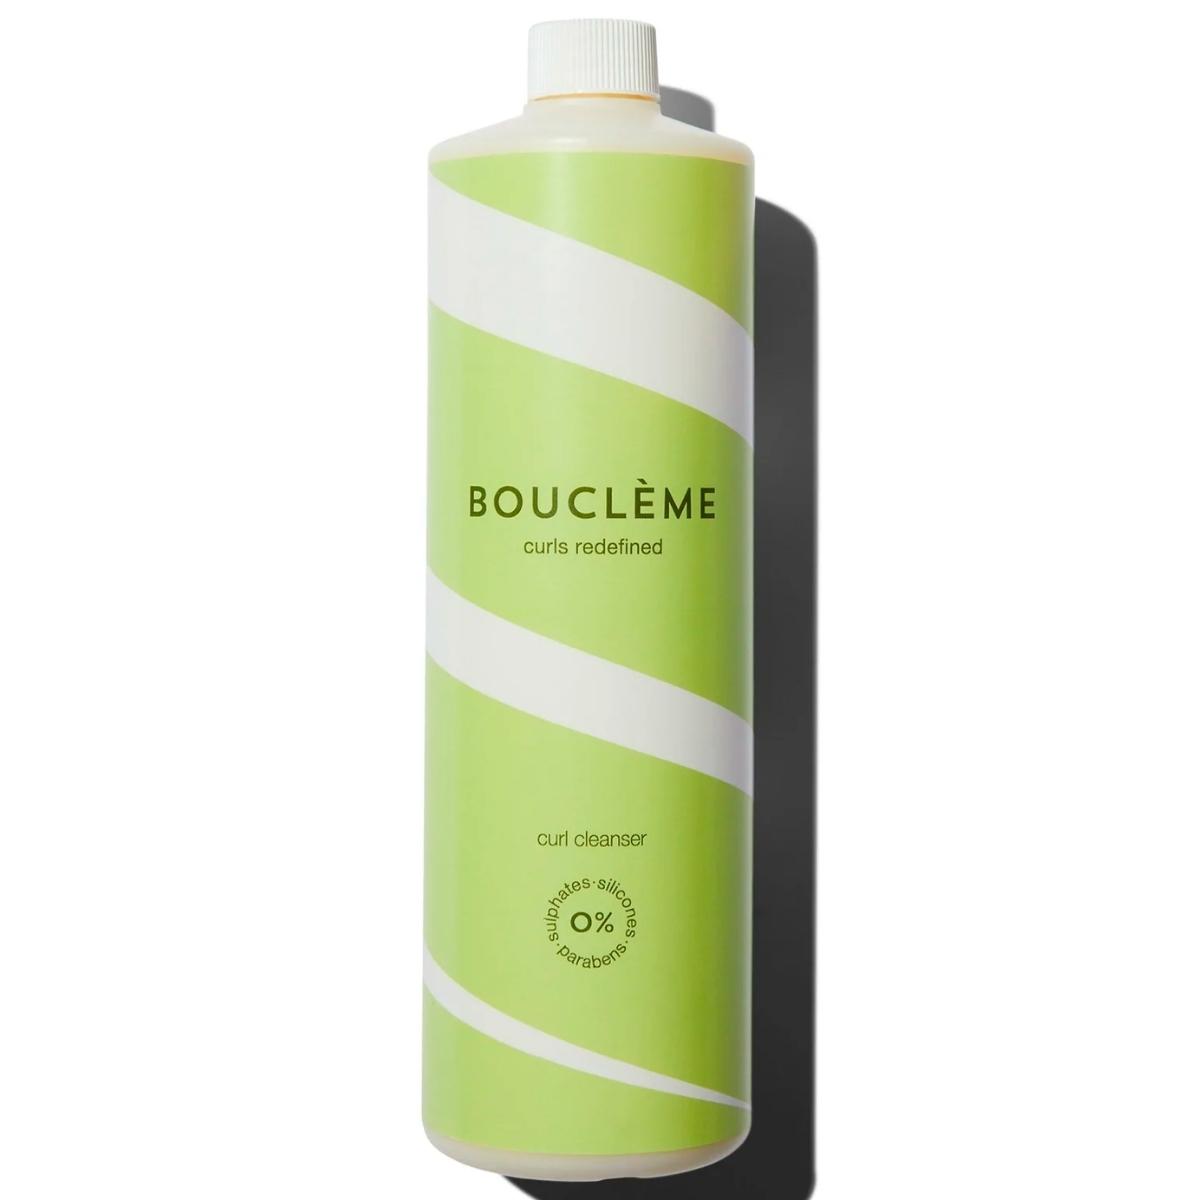 Le Curl Cleanser Bouclème en maxi format d'un litre. Crème lavante non moussante, elle nettoie tout en douceur vos cheveux en préservant au maximum leur hydratation.